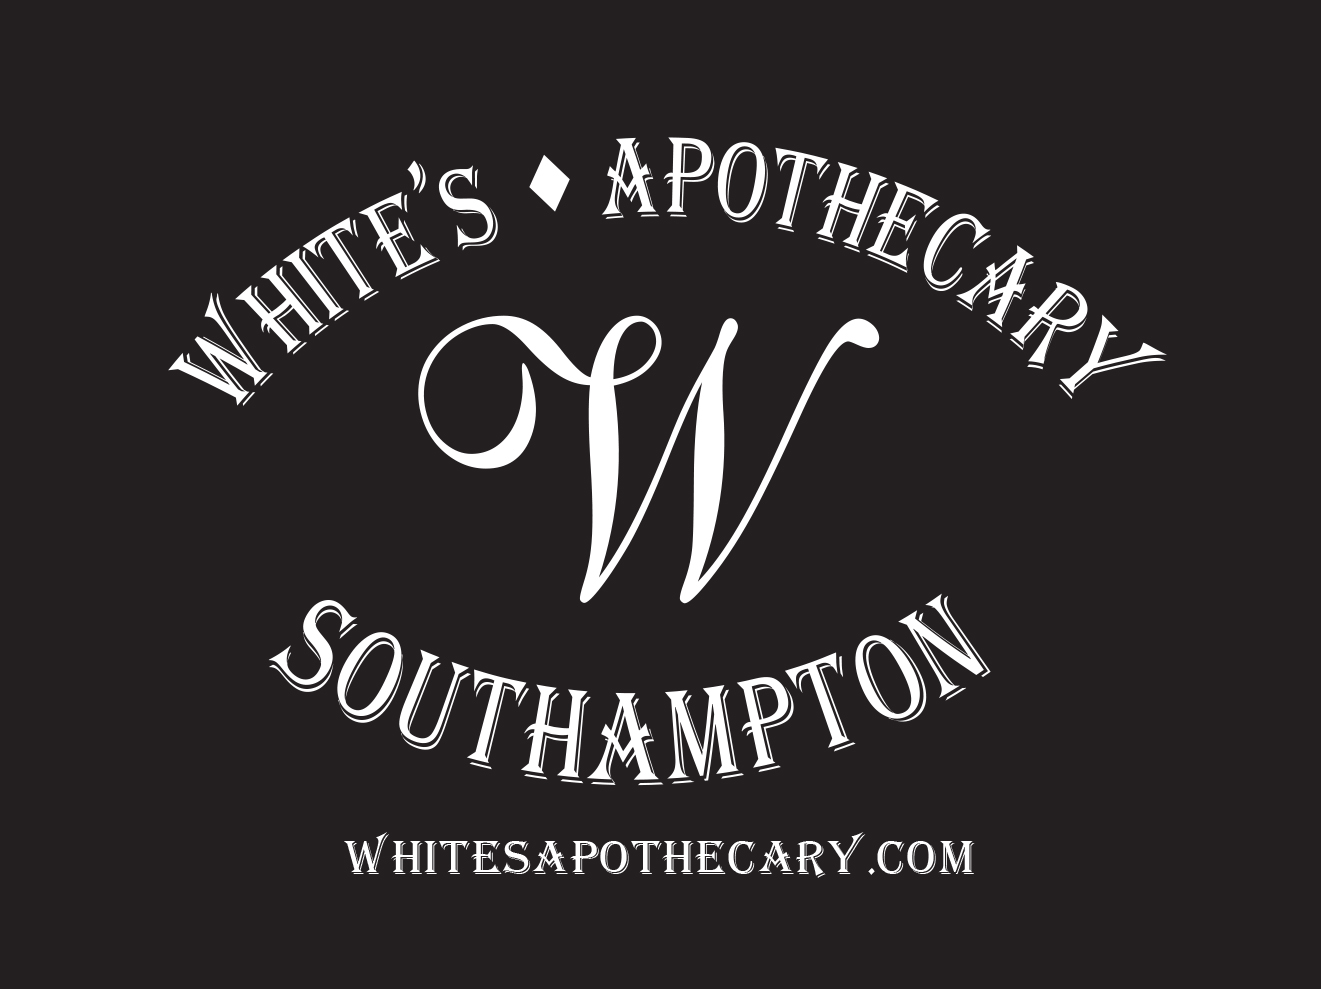 White's Apothecary Southampton